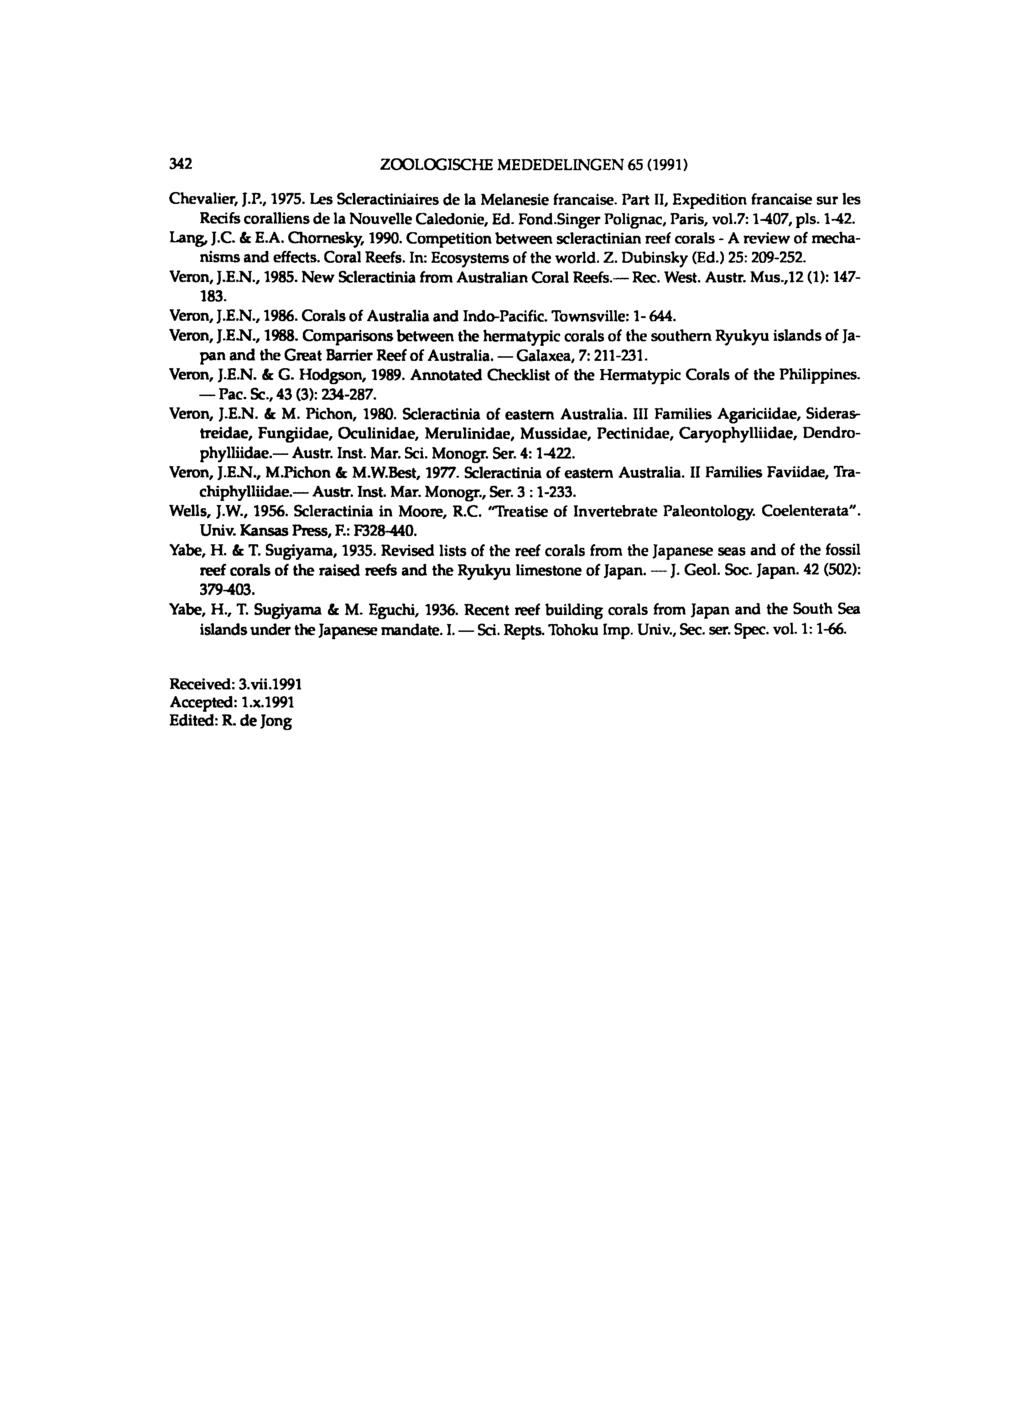 342 ZOOLOGISCHE MEDEDELINGEN 65 (1991) Chevalier, J.P., 1975. Les Scleractiniaires de la Melanesie francaise. Part II, Expedition francaise sur les Recifs coralliens de la Nouvelle Caledonie, Ed.